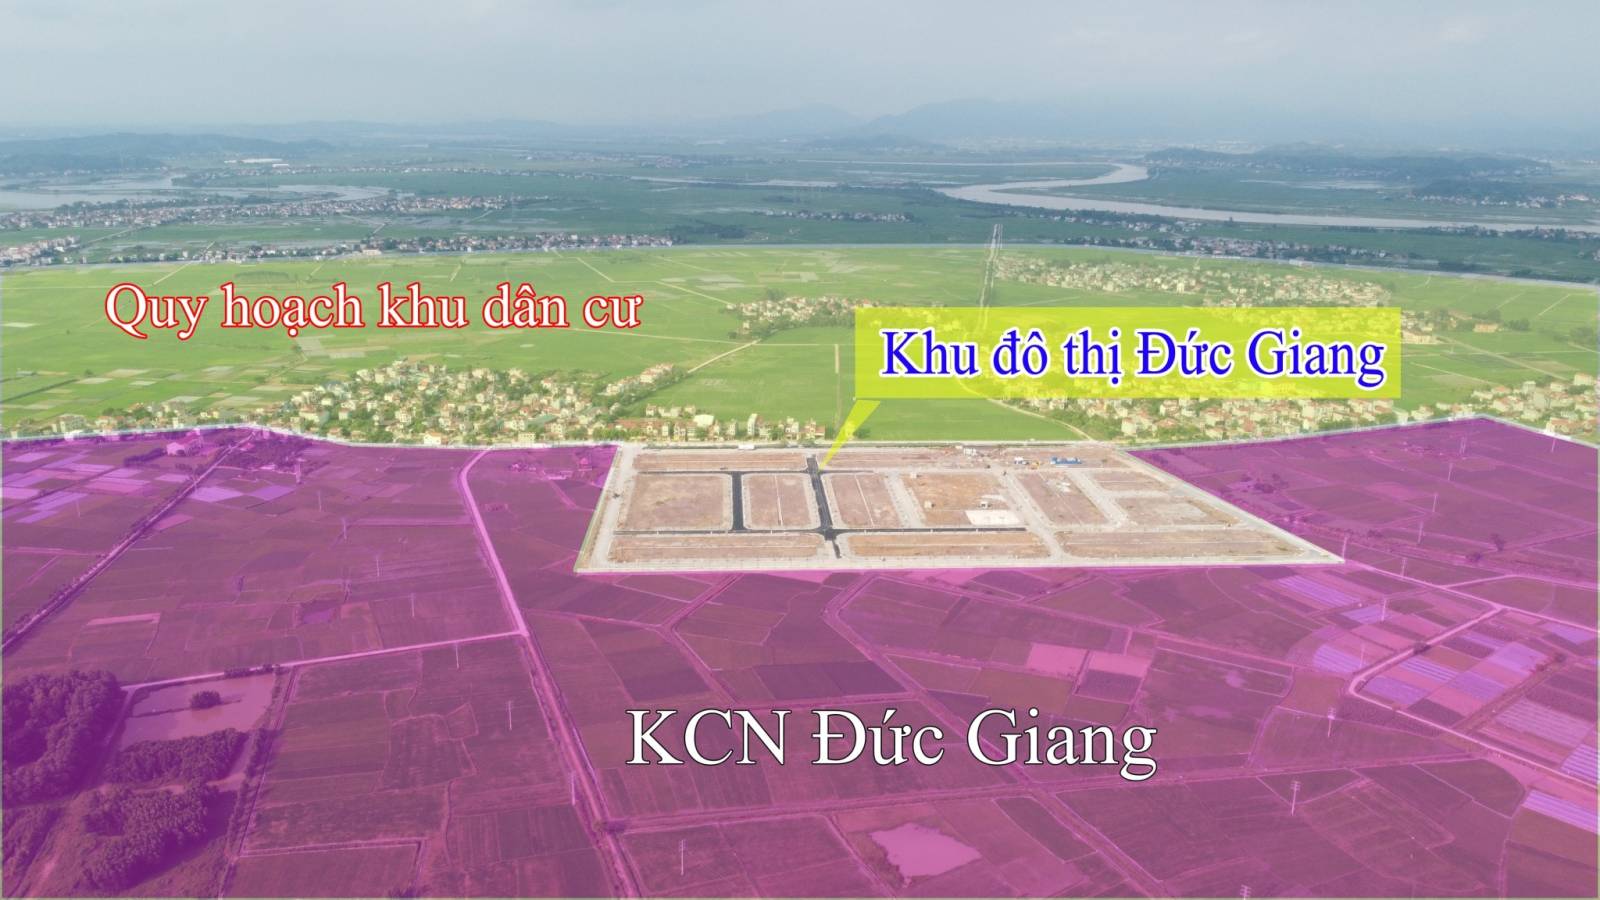 Đất nền cổng KCN 700ha Yên Dũng 70.000 công nhân, chỉ 1.X tỷ